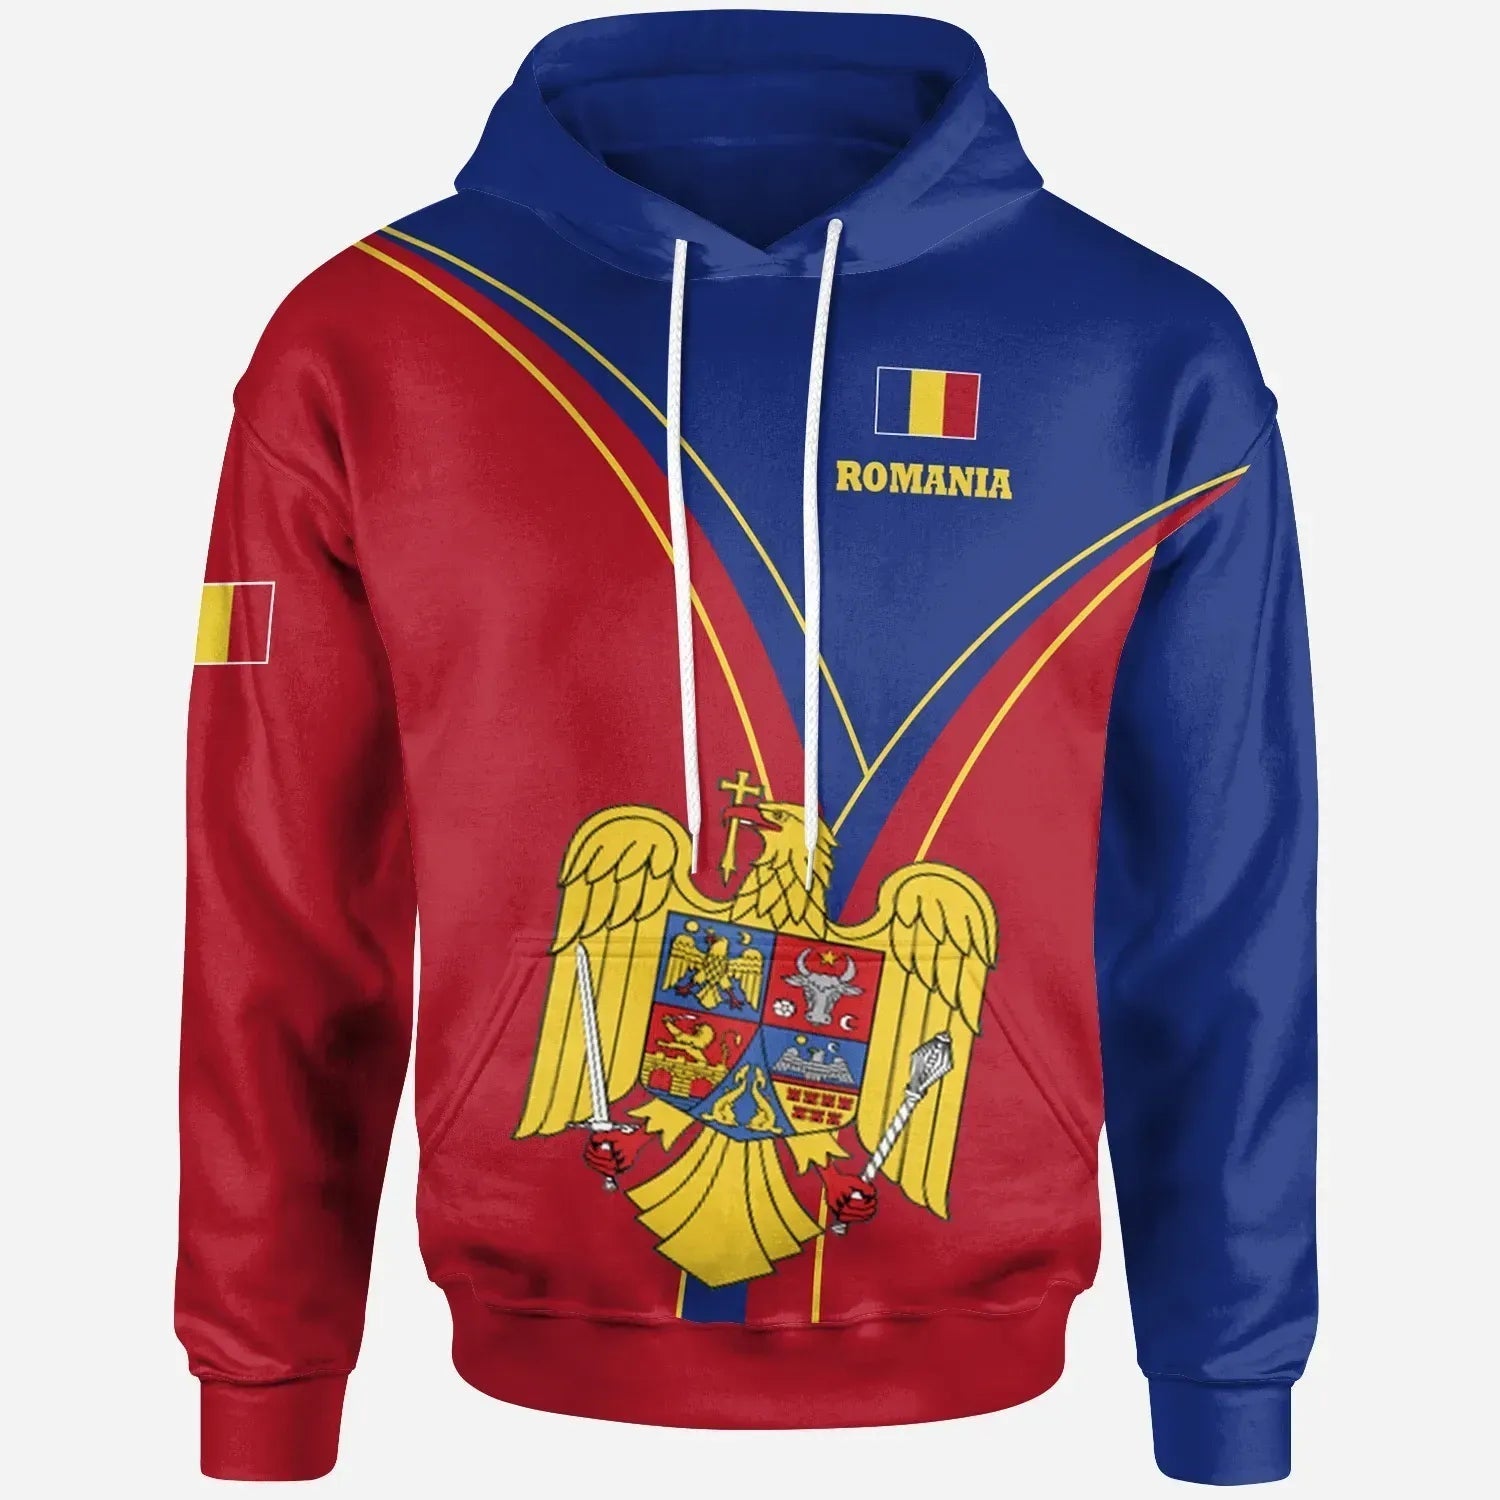 romania-hoodie-romanian-pride